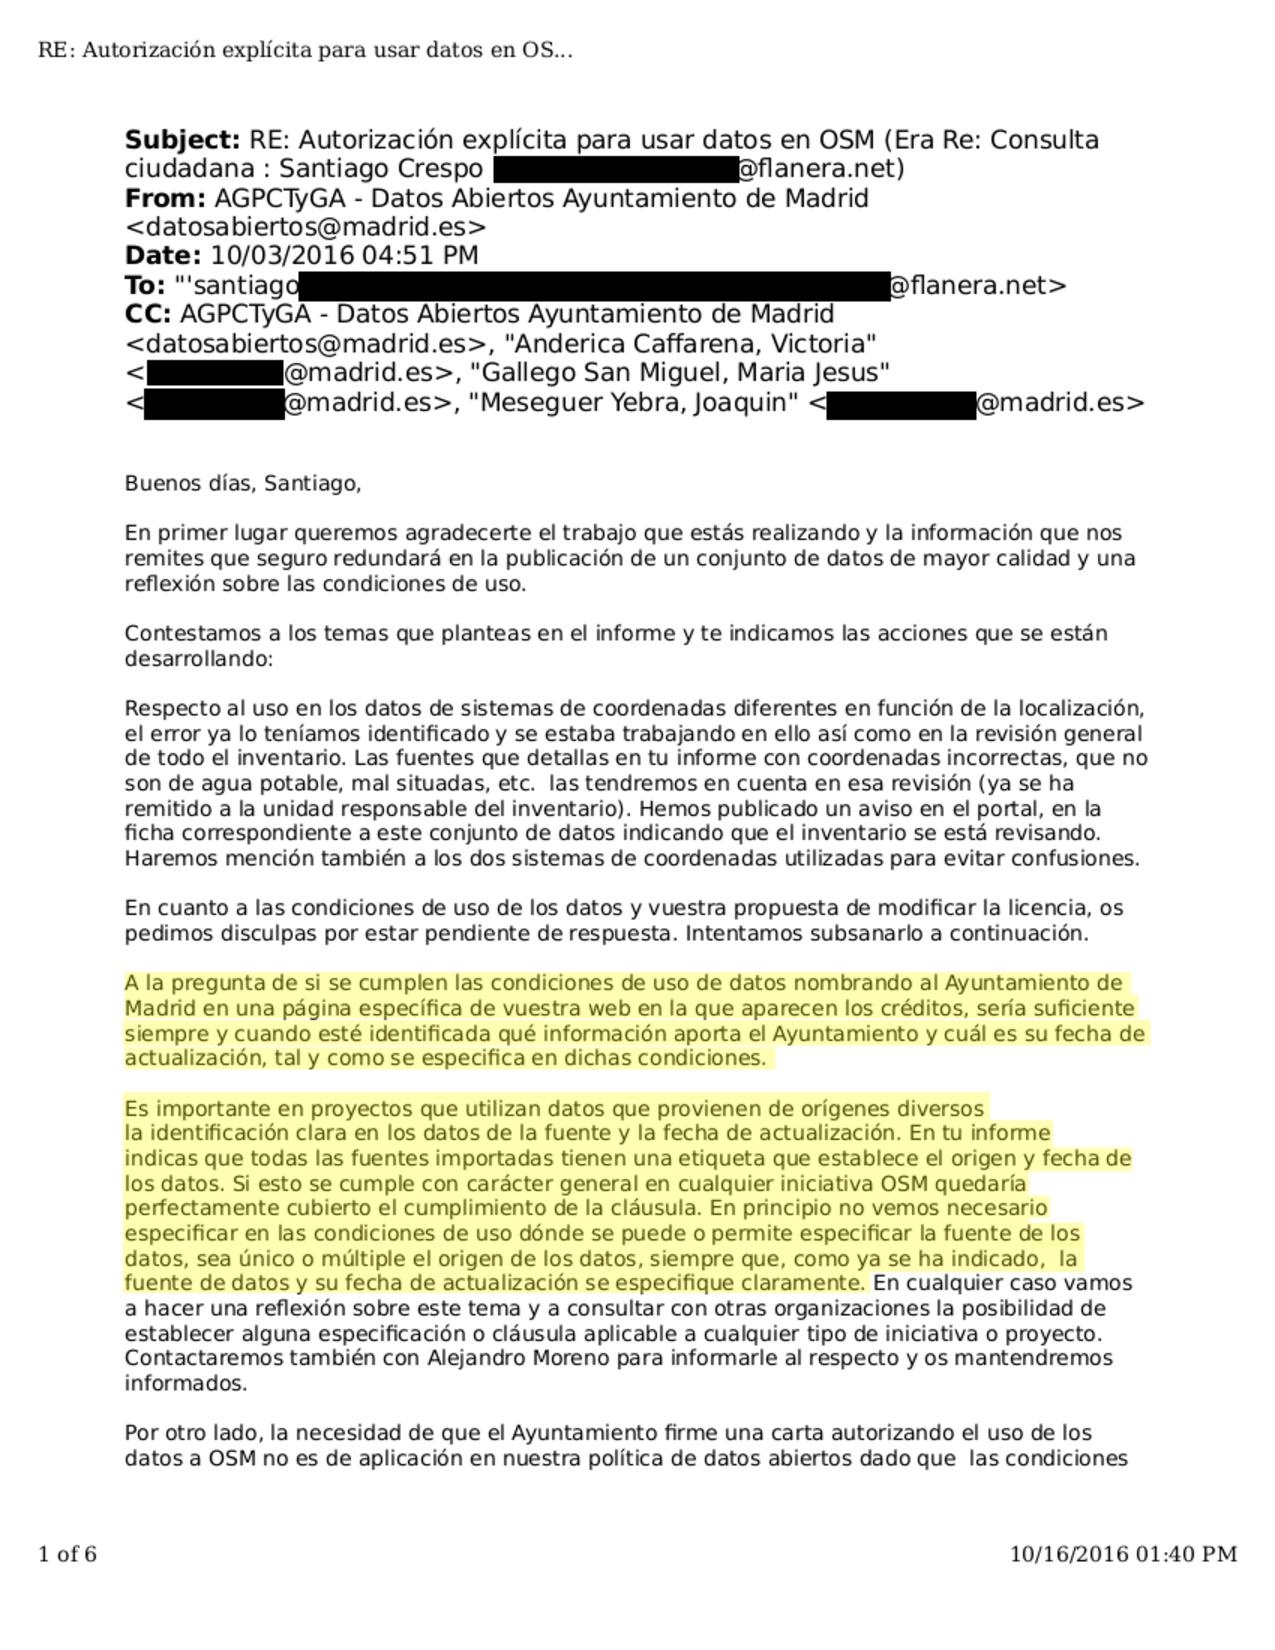 Cumplimiento de la cláusula de atribución de los datos abiertos del Ayto. de Madrid en OSM.pdf